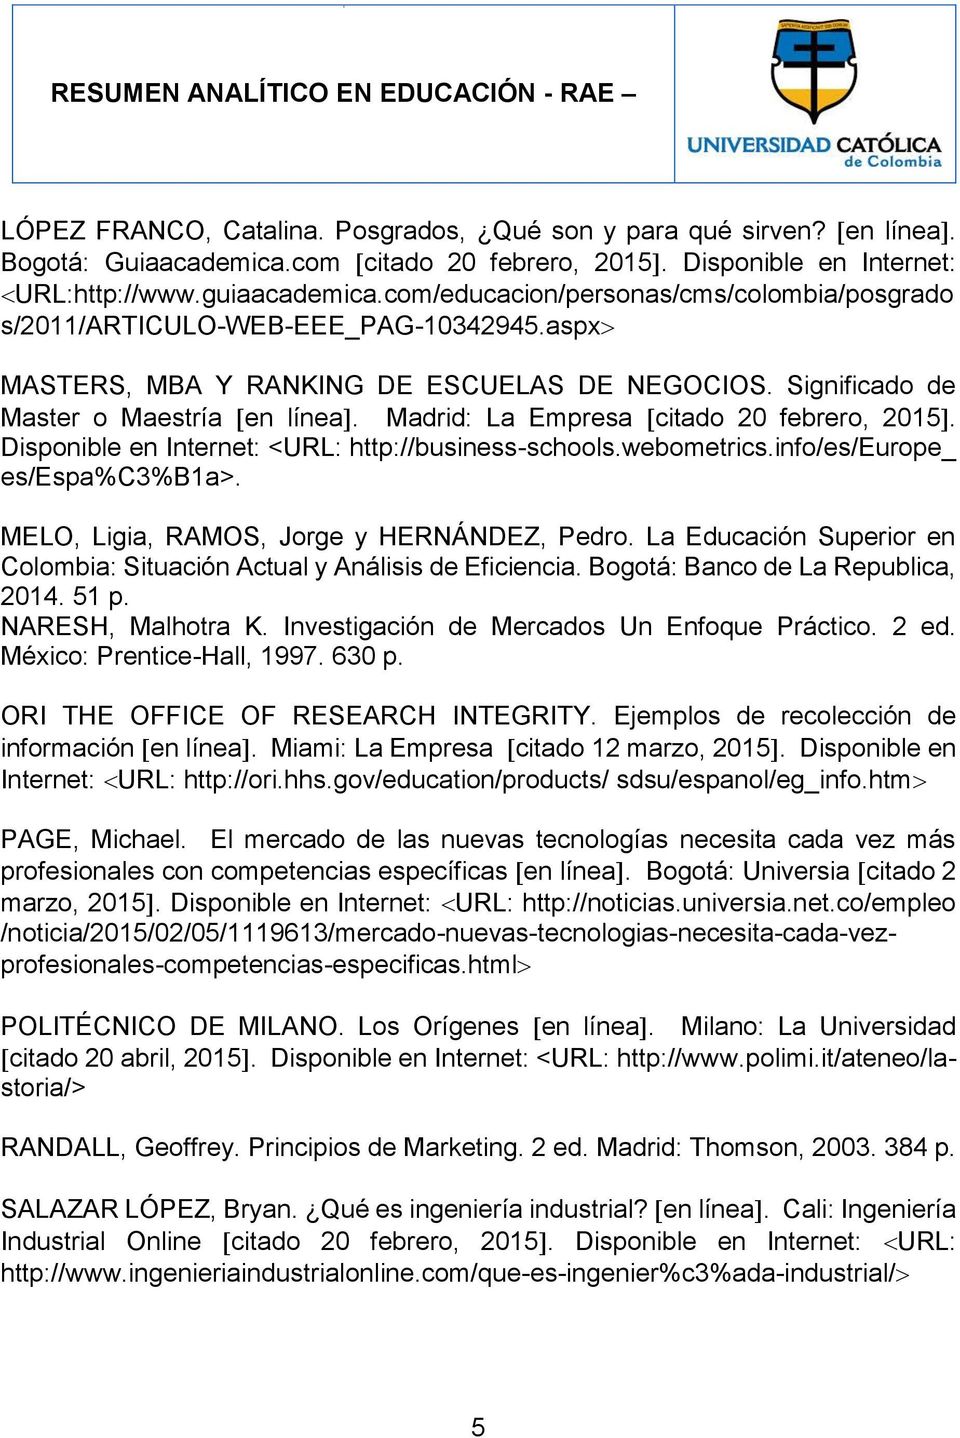 Madrid: La Empresa citado 20 febrero, 2015. Disponible en Internet: <URL: http://business-schools.webometrics.info/es/europe_ es/espa%c3%b1a>. MELO, Ligia, RAMOS, Jorge y HERNÁNDEZ, Pedro.